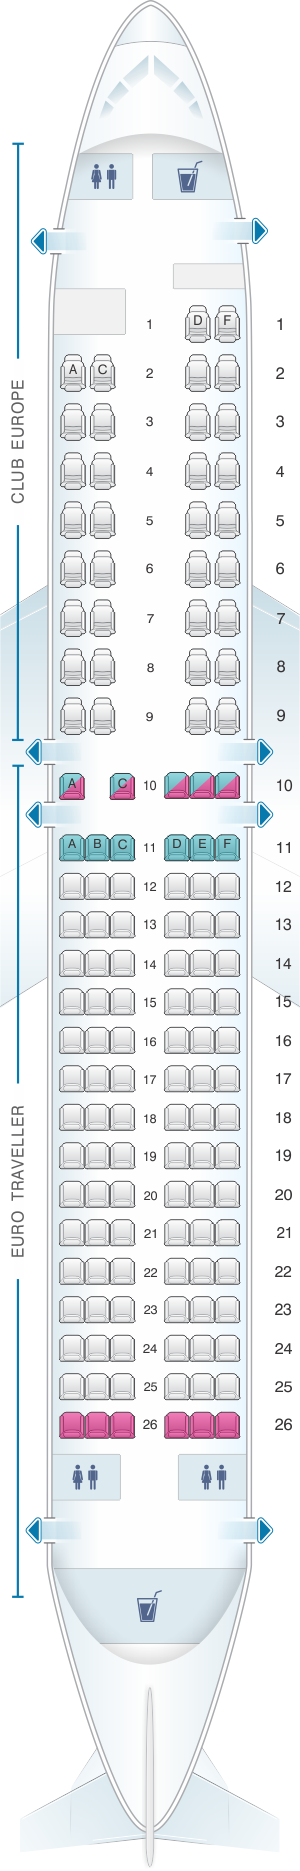 Seat map for British Airways Boeing B737 400 European Layout